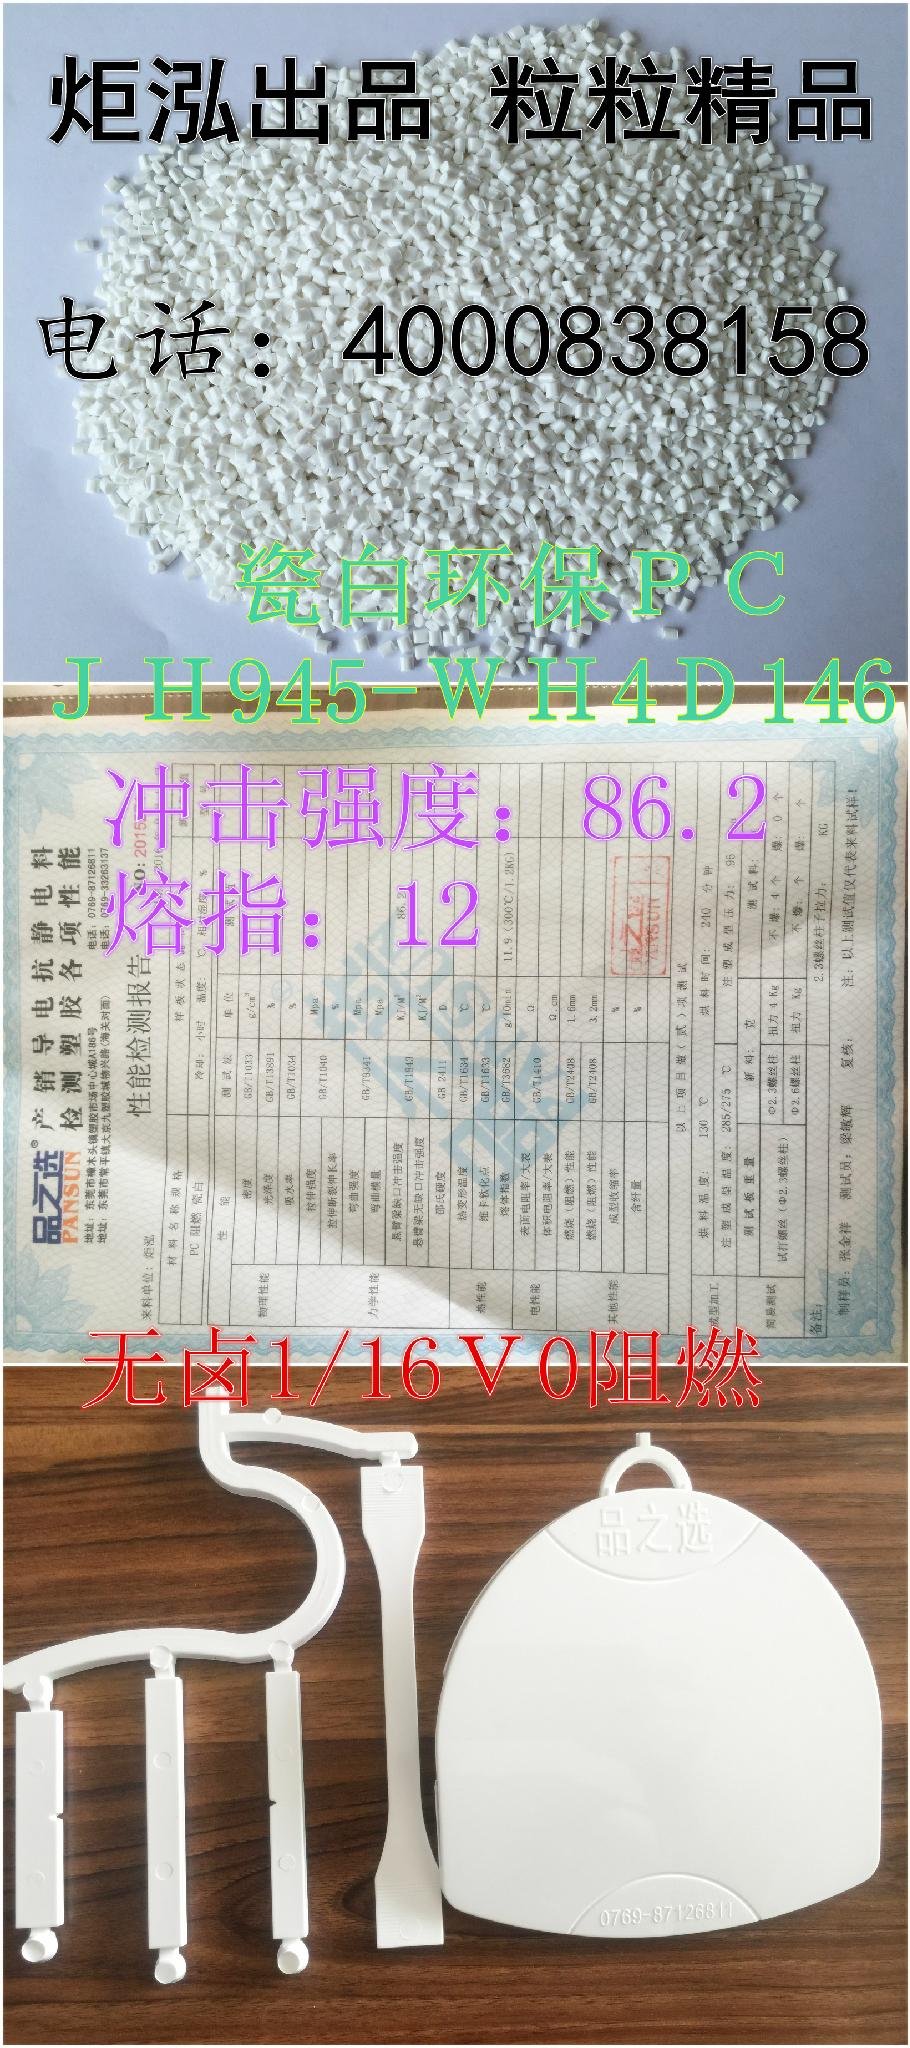 供应瓷白PC  广州炬泓  JH945  2